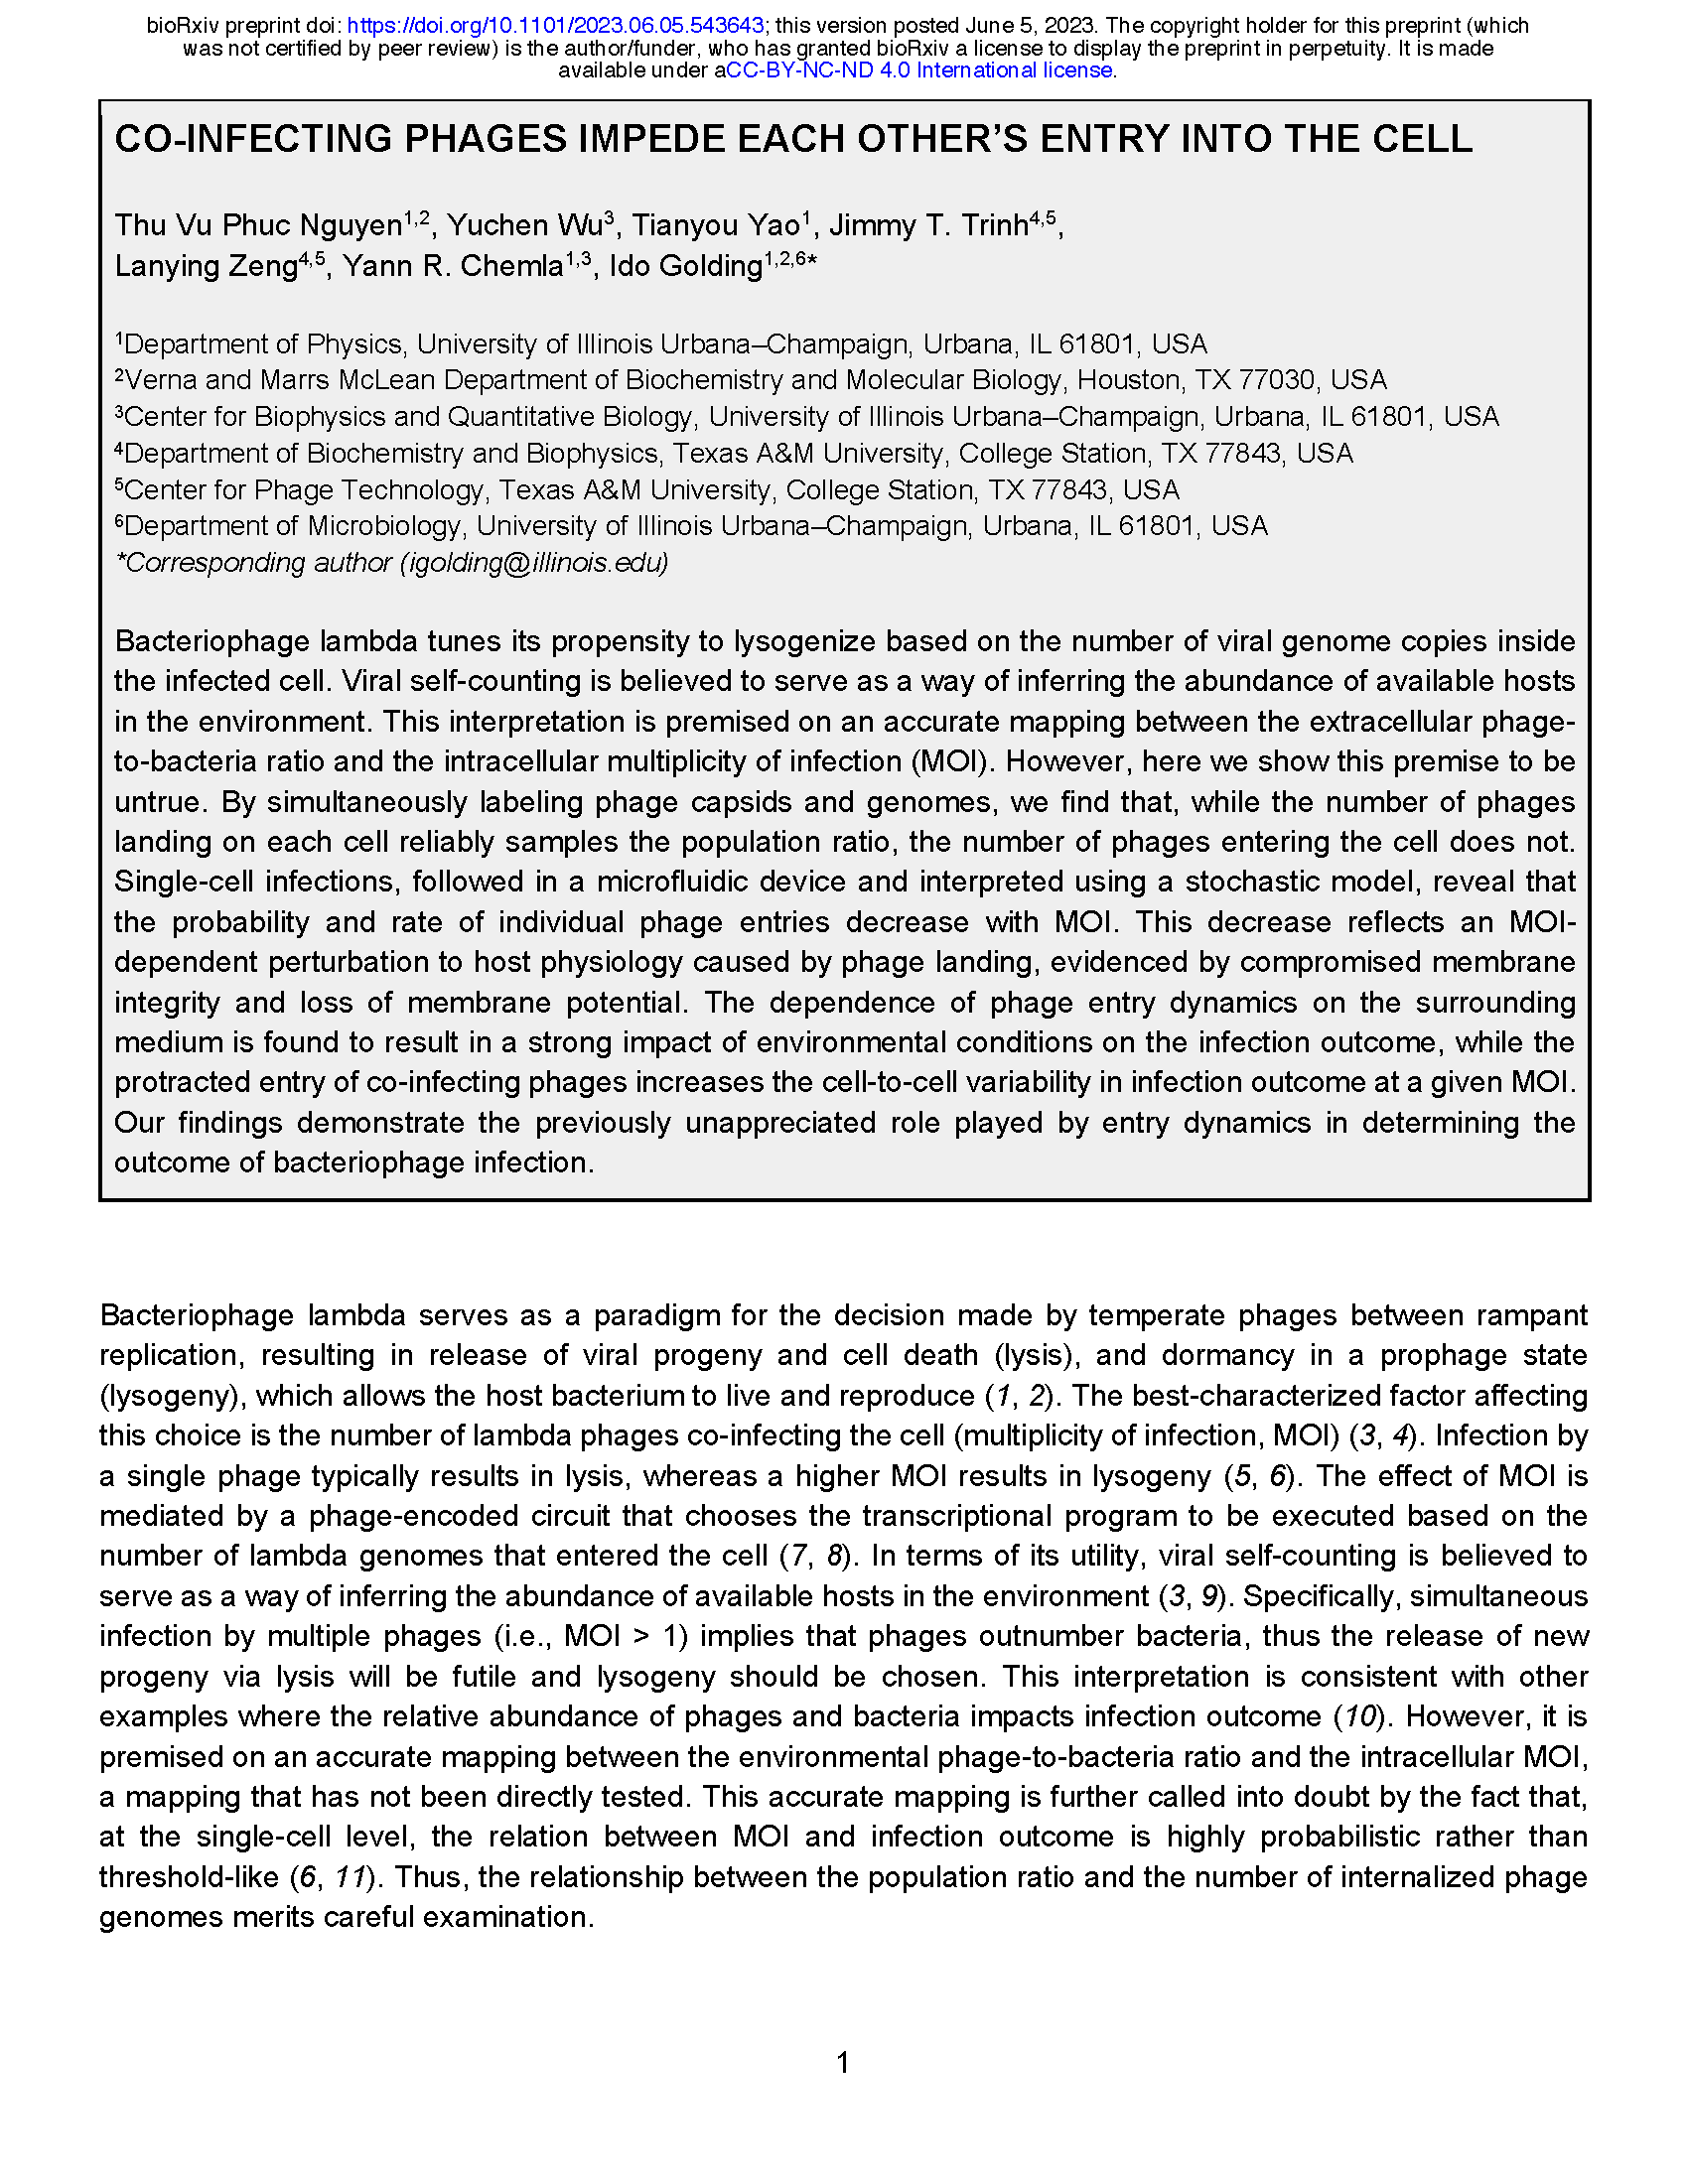 Nguyen et al., bioRxiv 2023 [PDF]